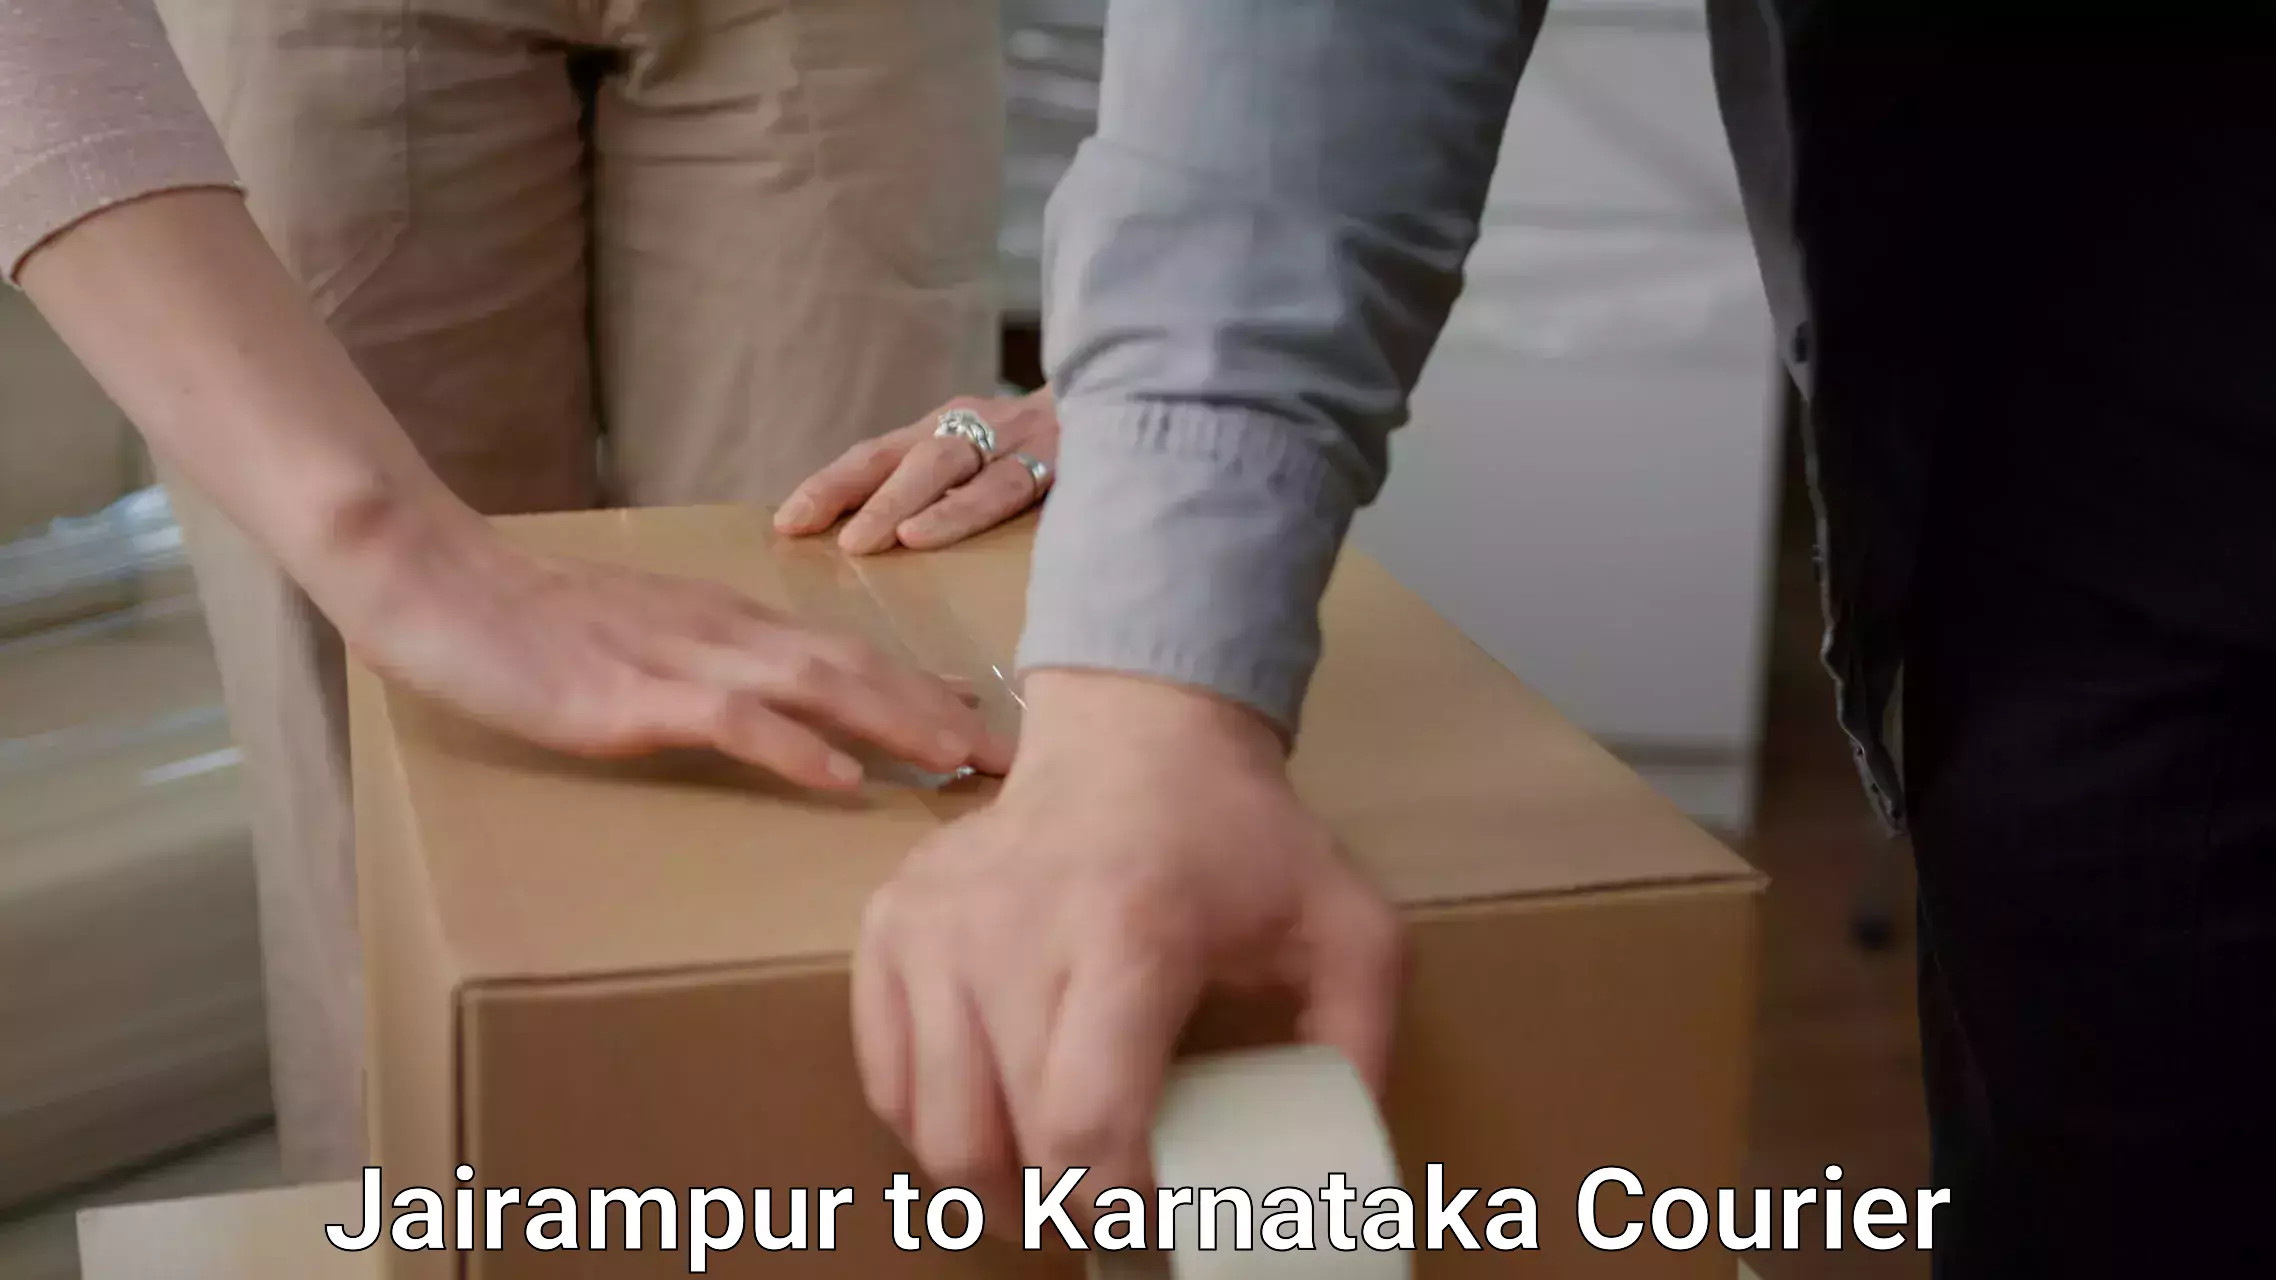 Professional movers Jairampur to Karnataka